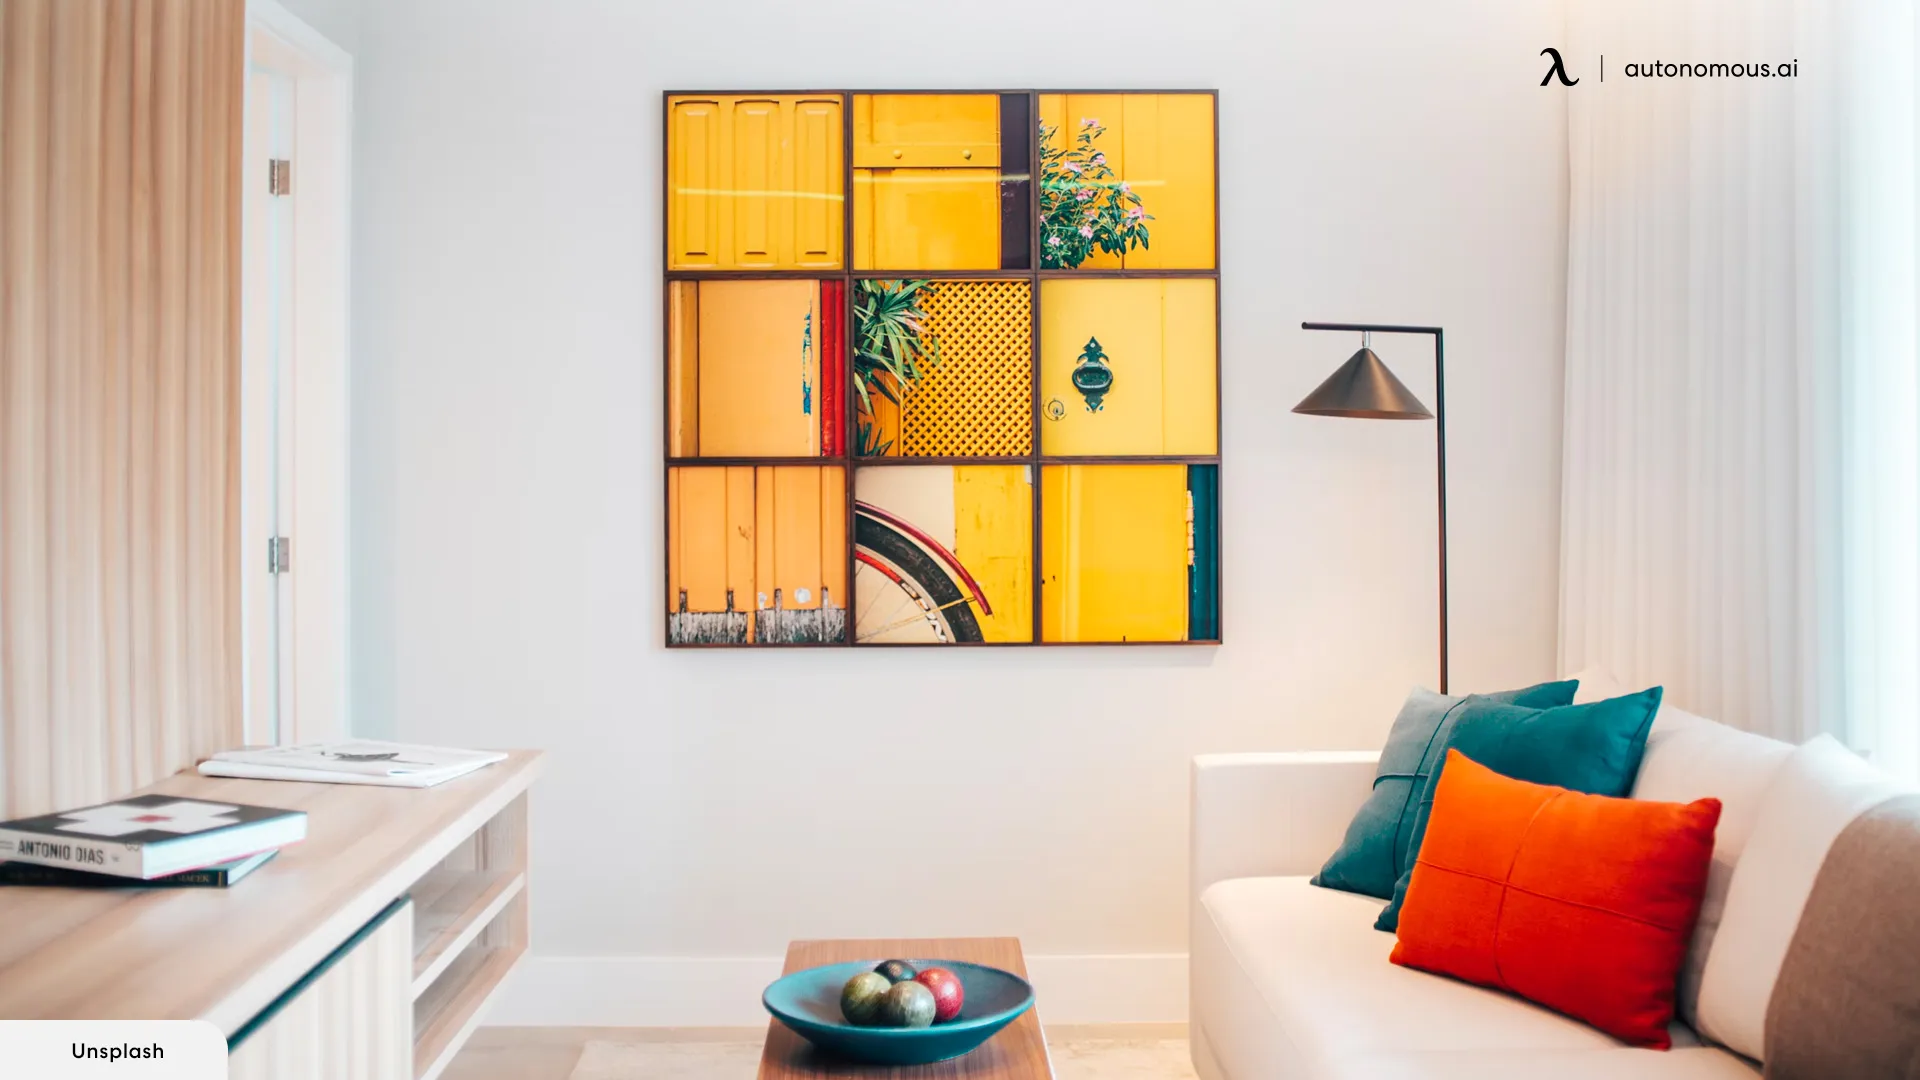 A Vibrant Color Palette - Art Deco furniture